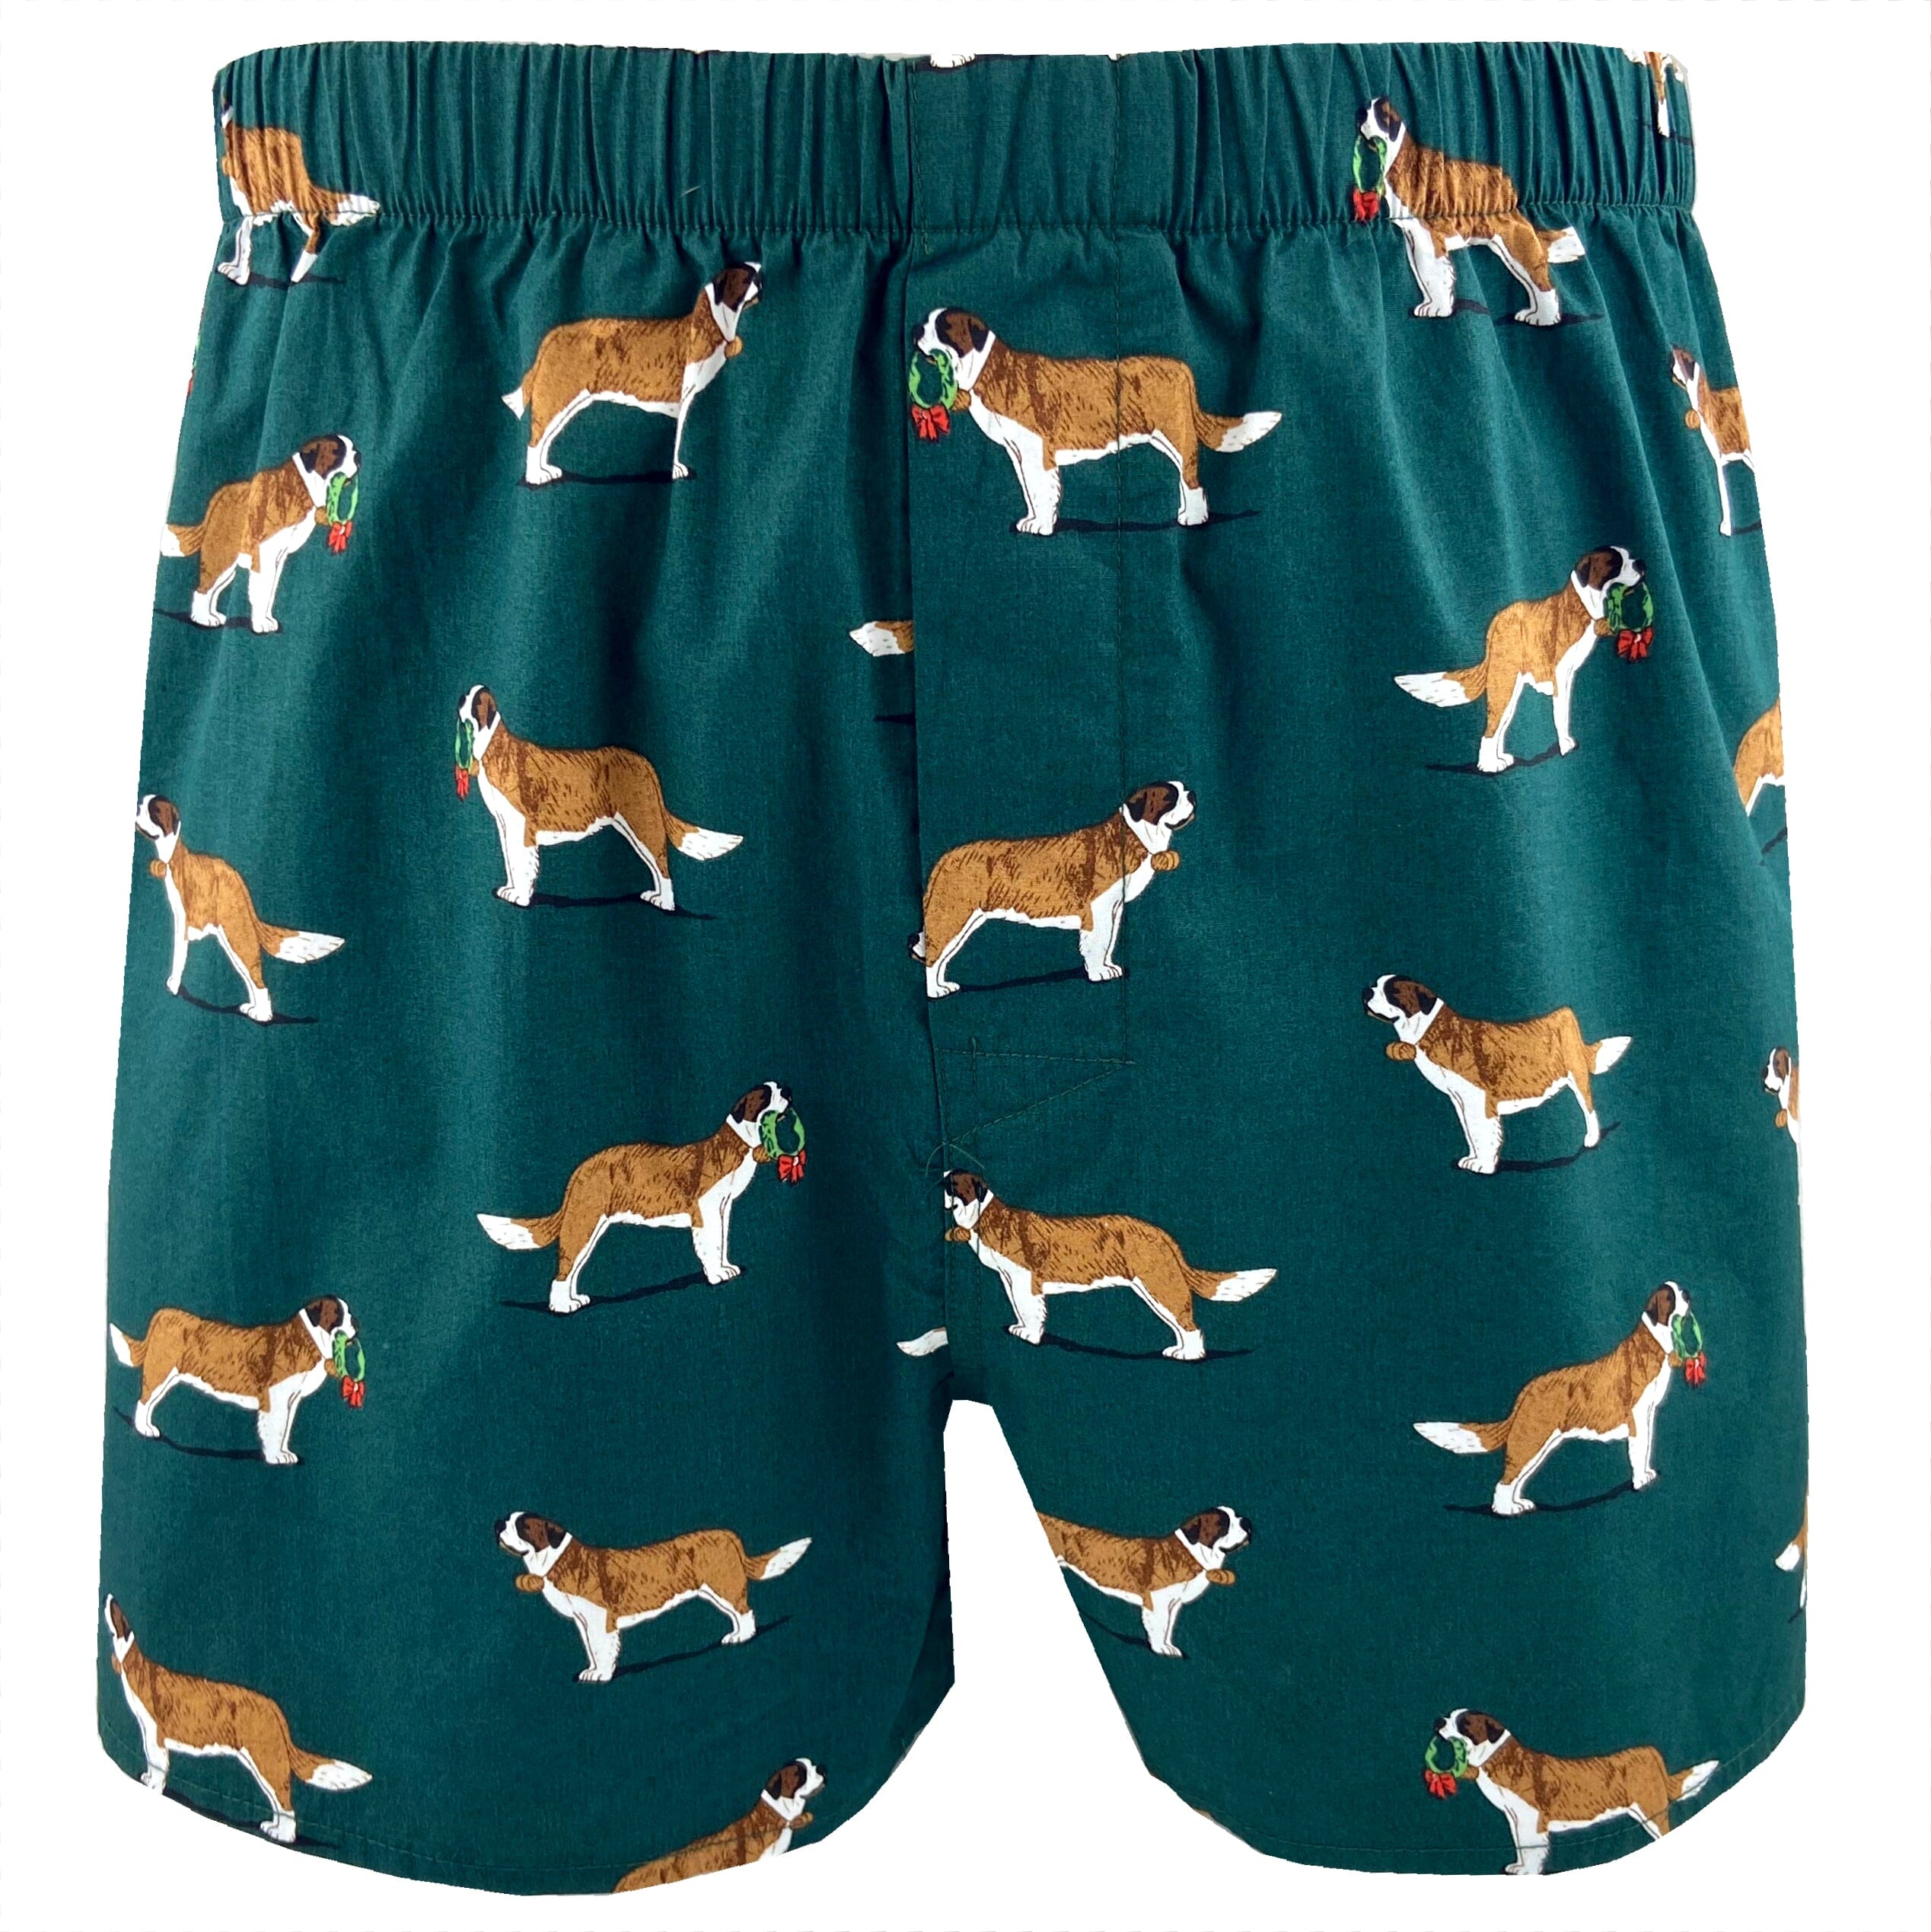 St. Bernard Boxers For Men. Buy Men's Dog Patterned Boxer Shorts Here